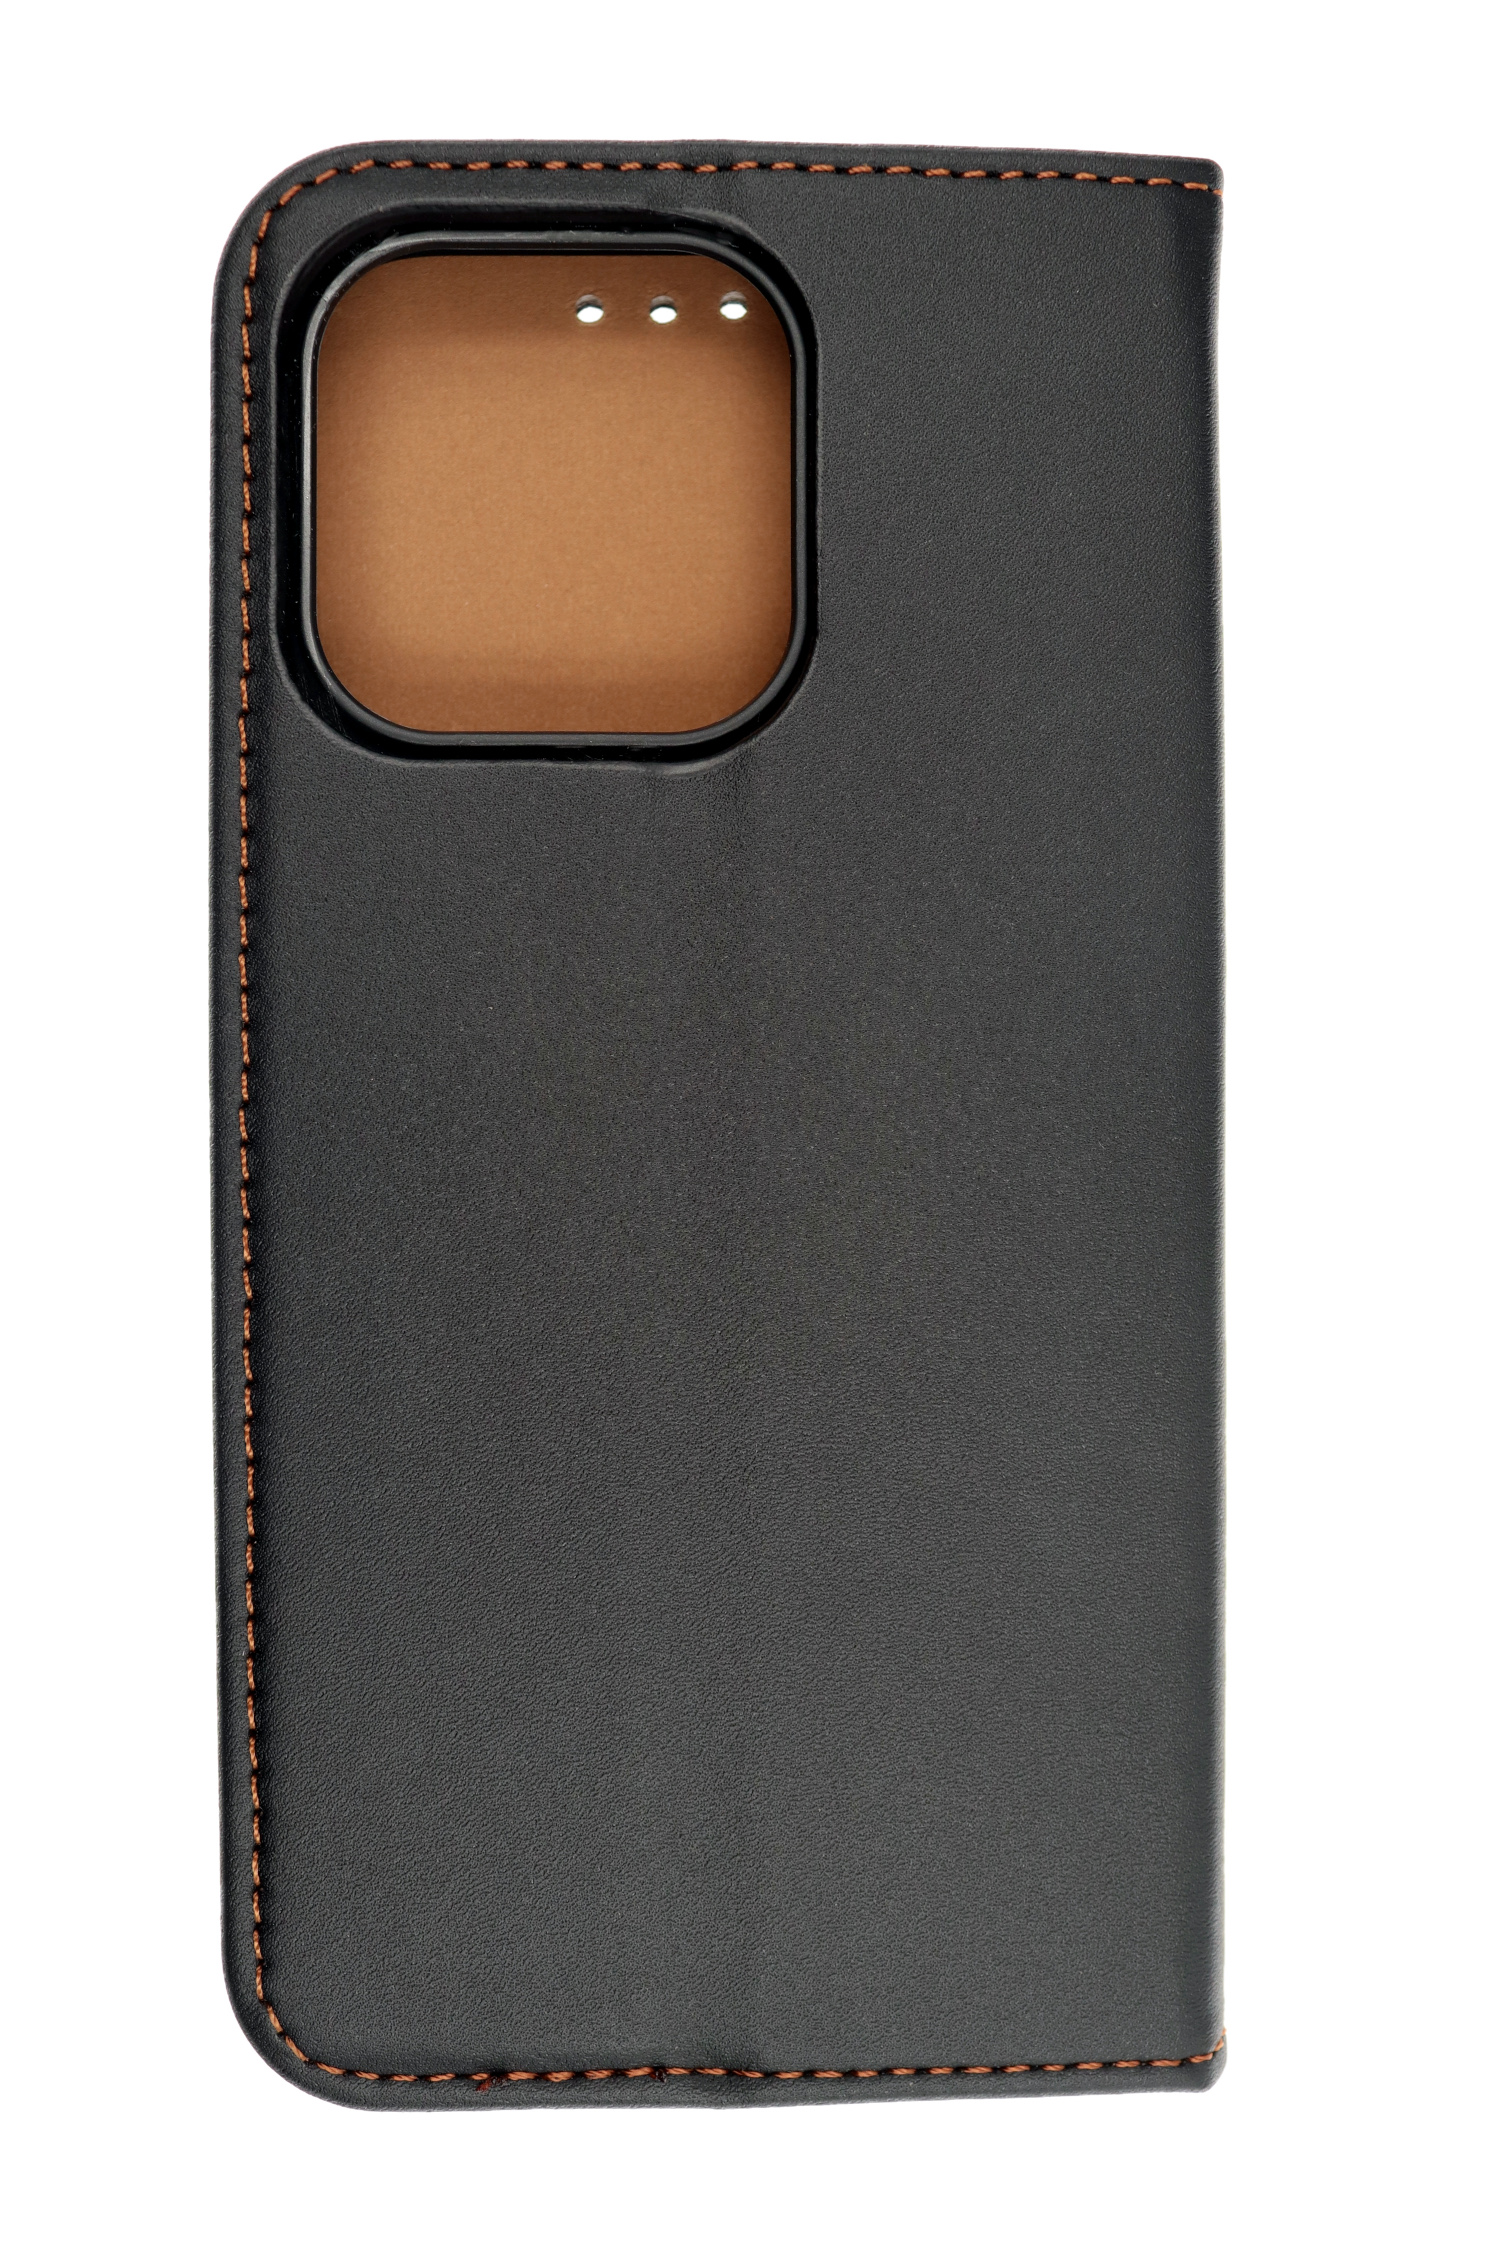 JAMCOVER Echt Leder iPhone Apple, Pro, 14 Bookcover, Schwarz Bookcase